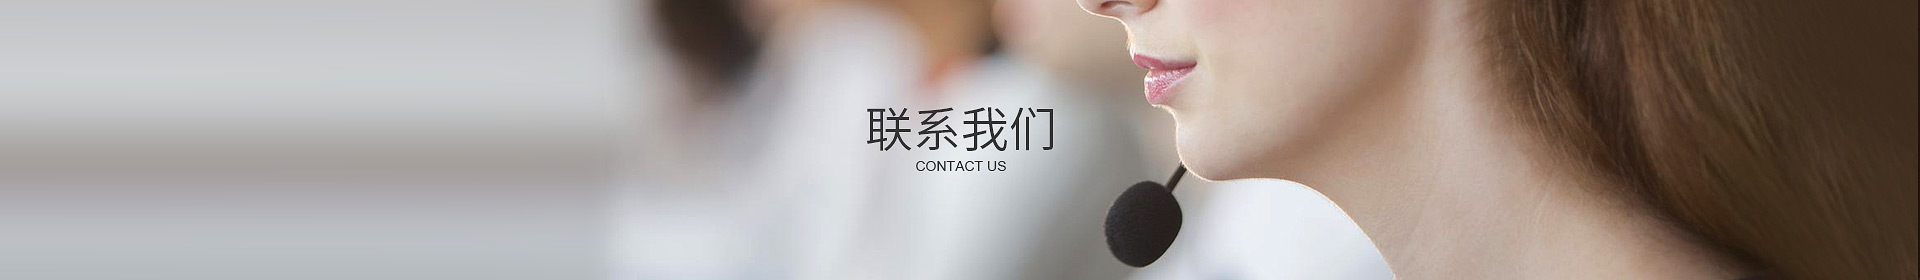 东莞市356国际彩票网站威自动化设备有限公司